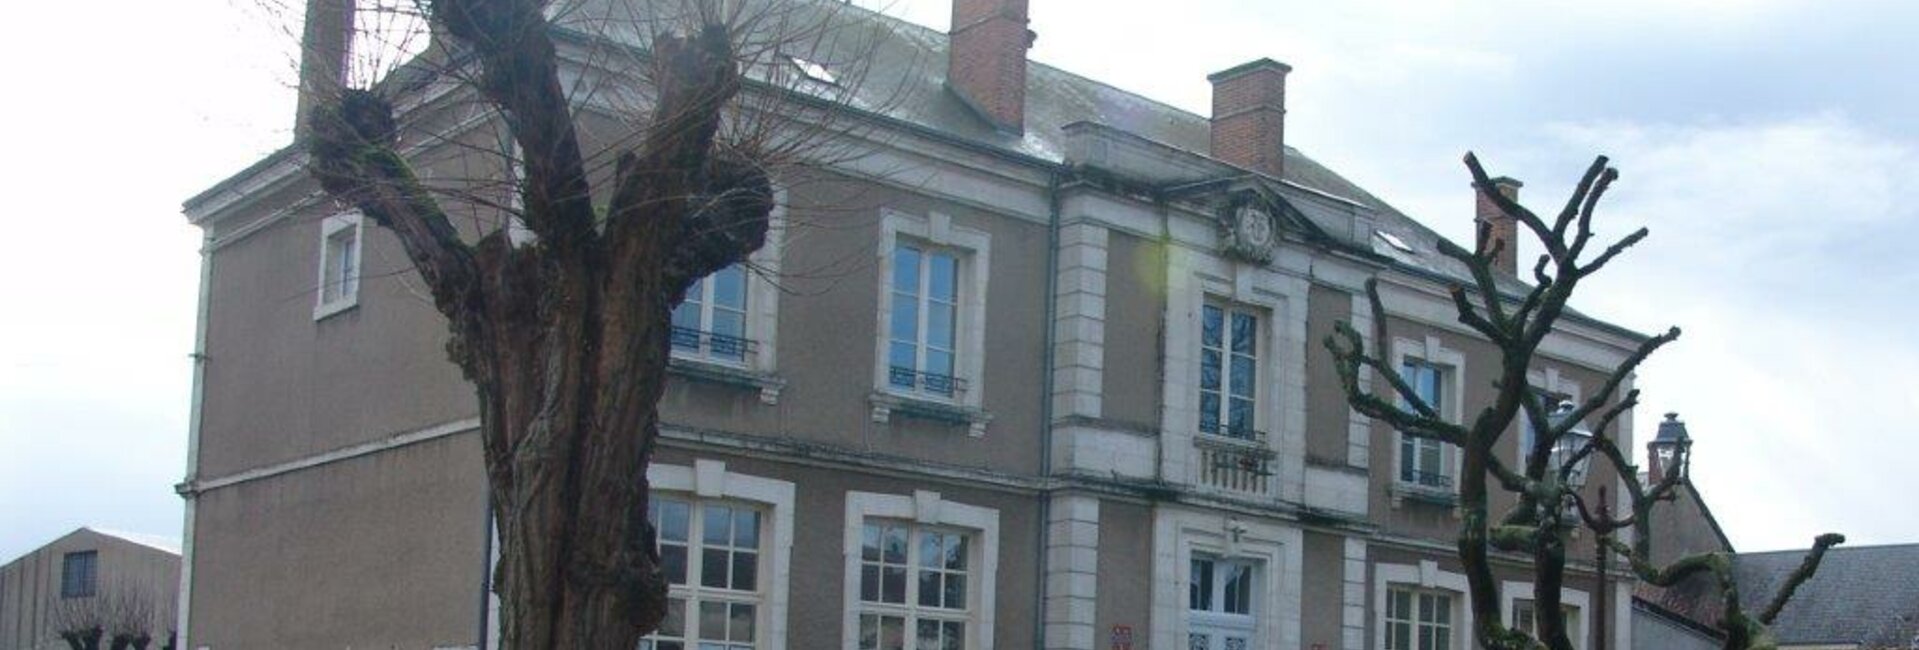 Coordonnées Contact Horaires Mairie Aschères Beauce Orléans Loiret